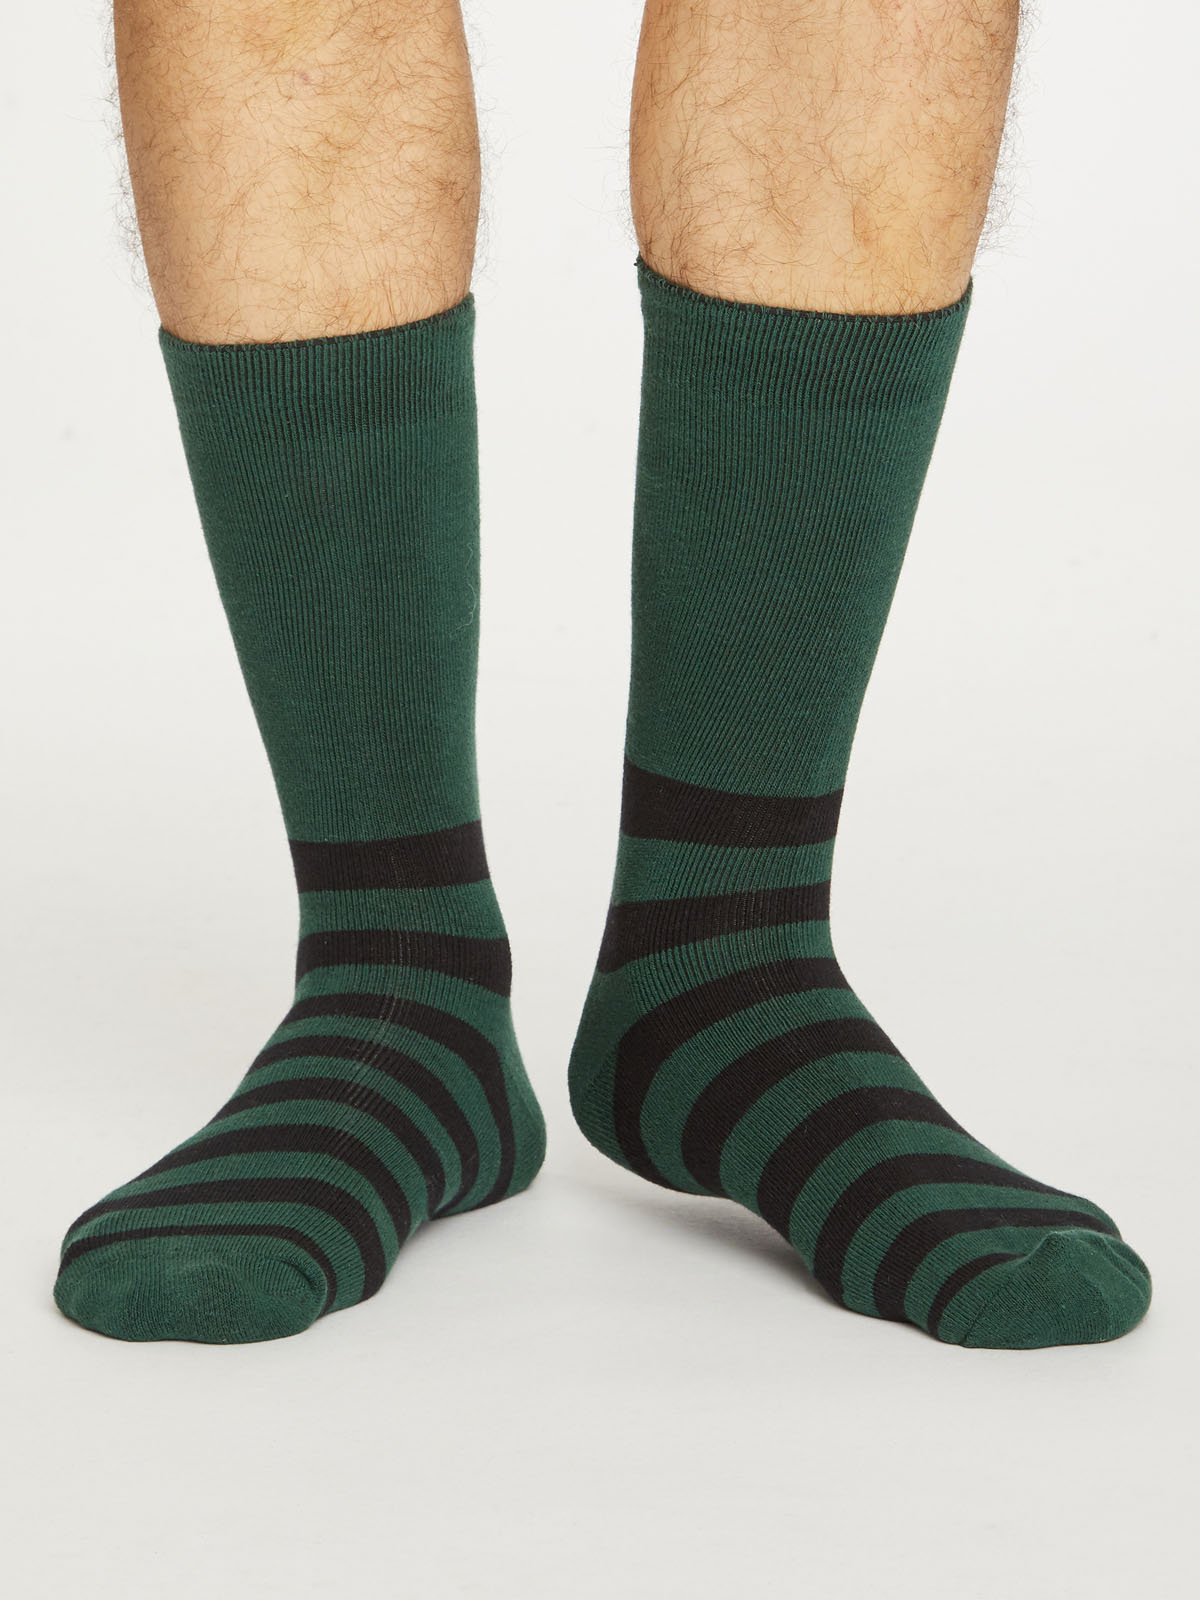 jukbeen programma Voorzichtigheid Dikke sokken bio katoen, strepen donkergroen - THOUGHT - Meer dan Mooi